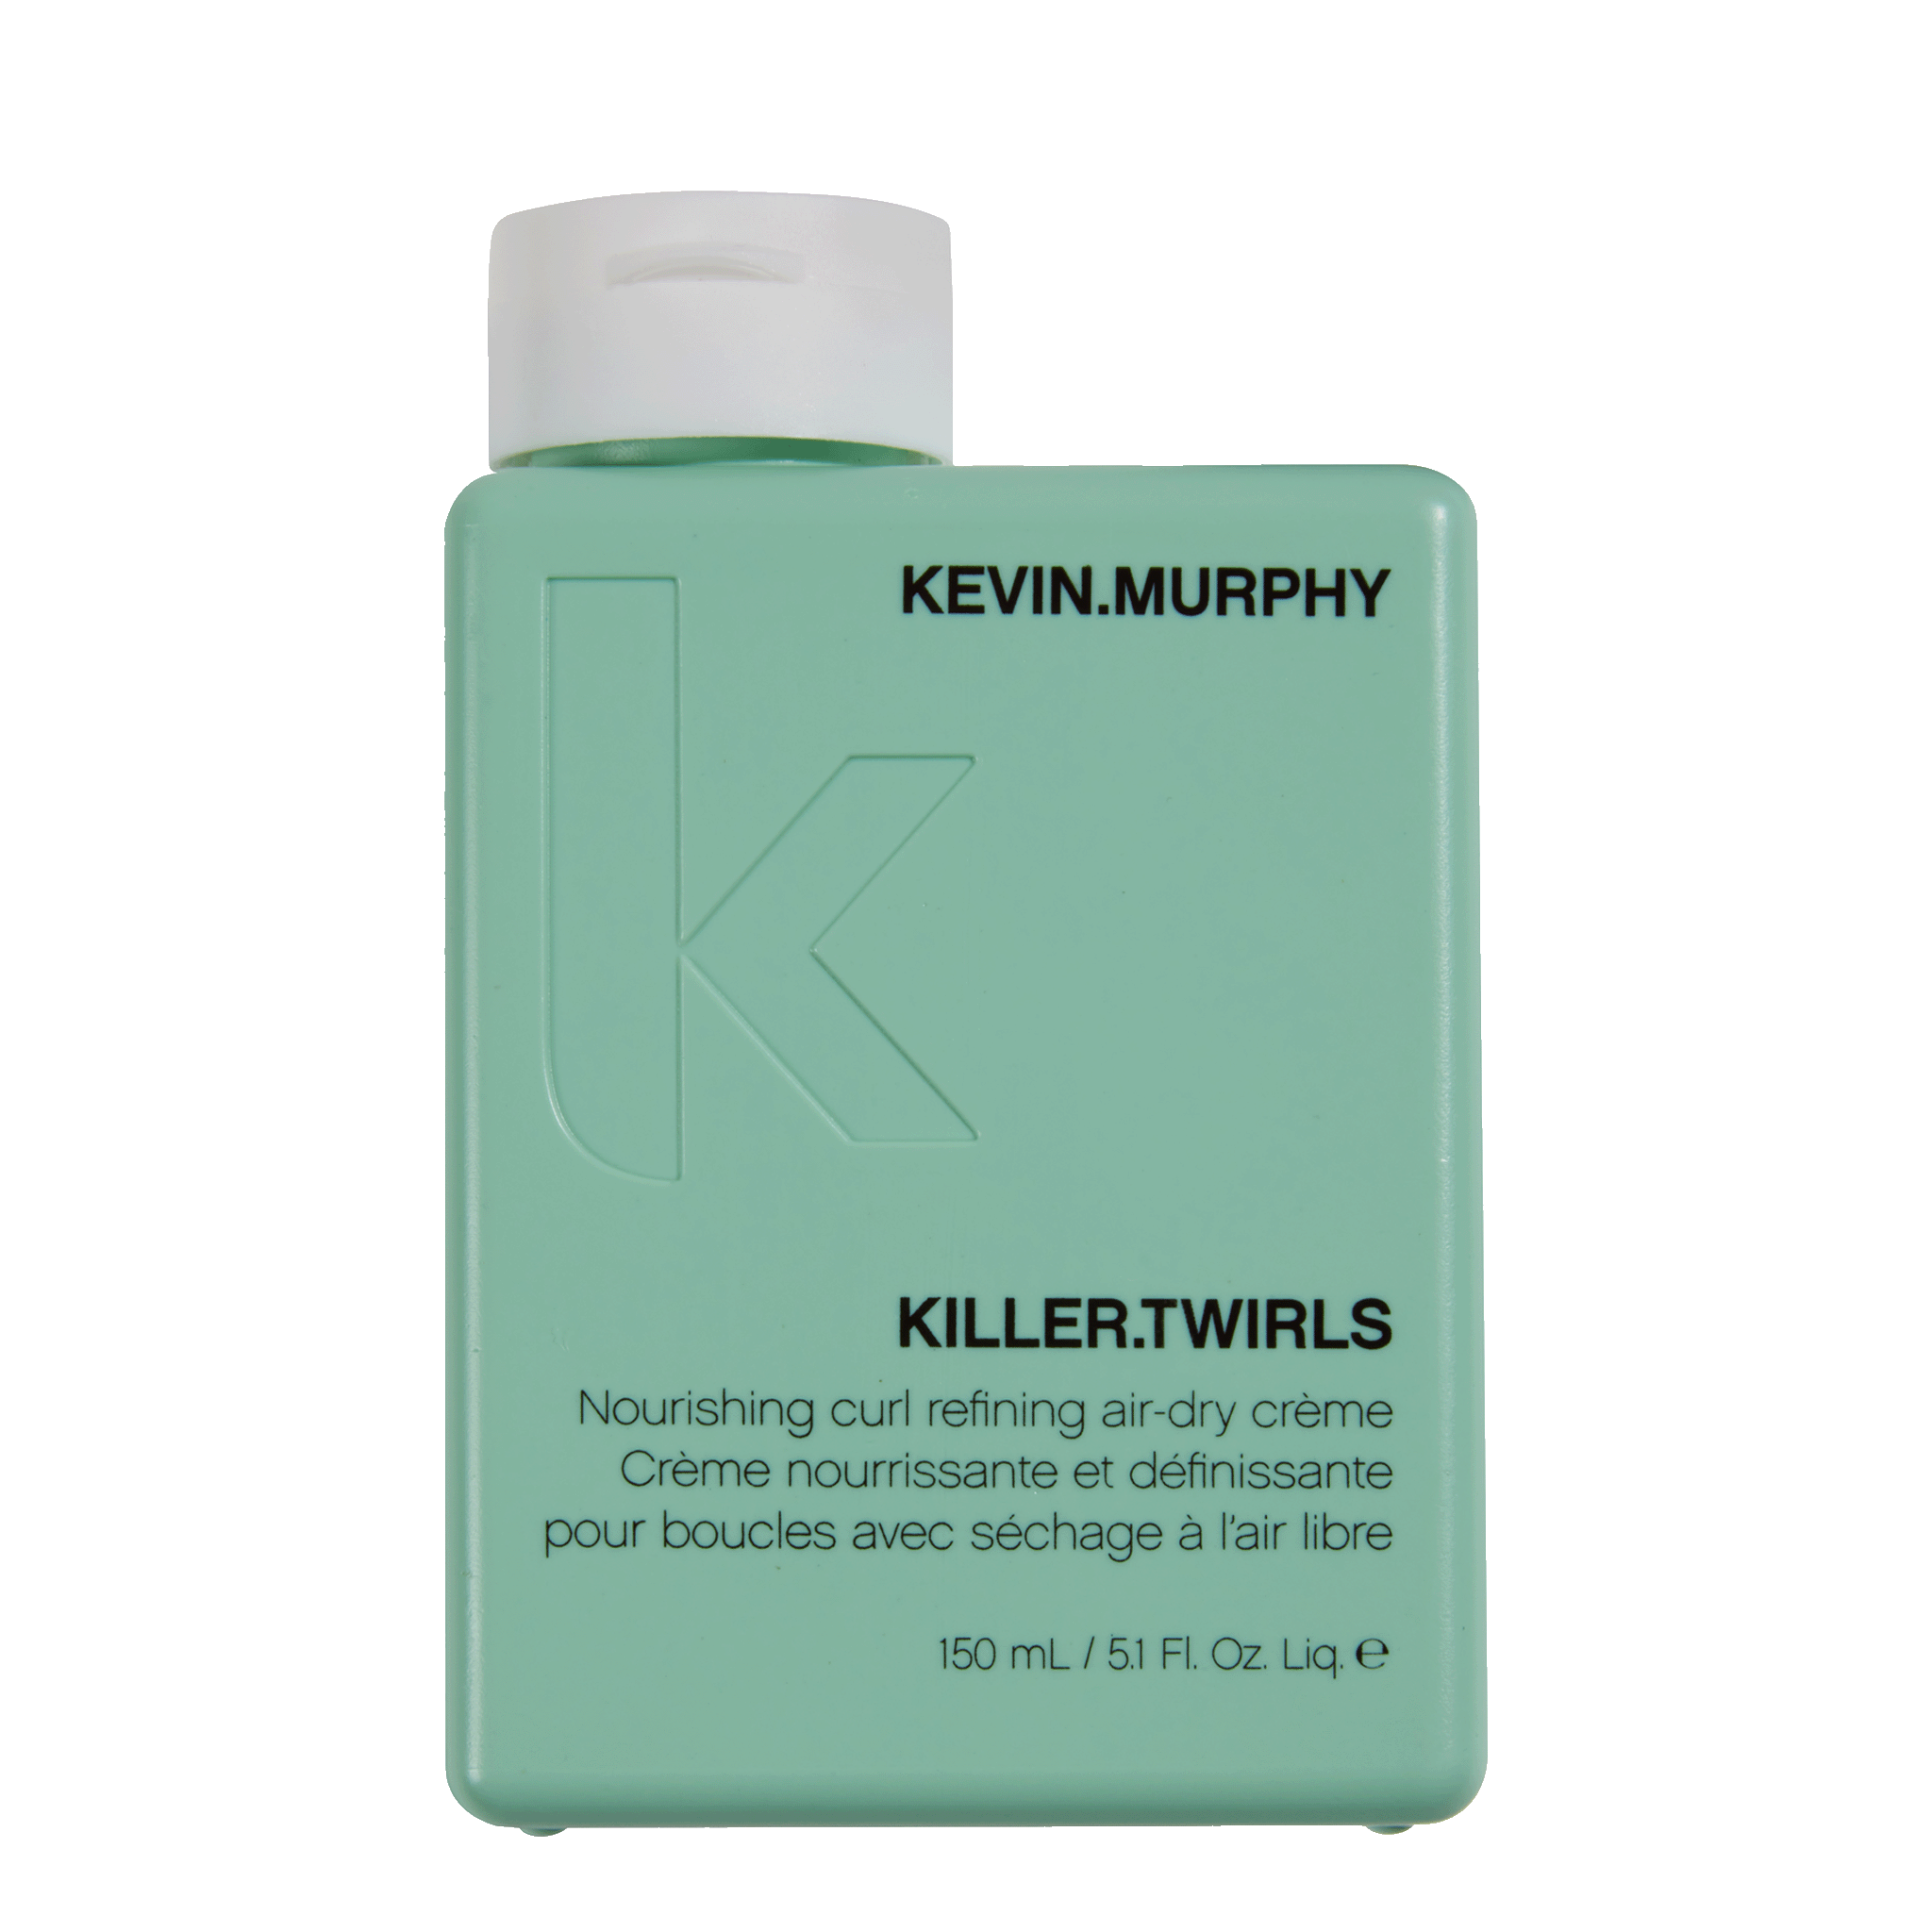 KEVIN.MURPHY Killer.Twirls 150ml